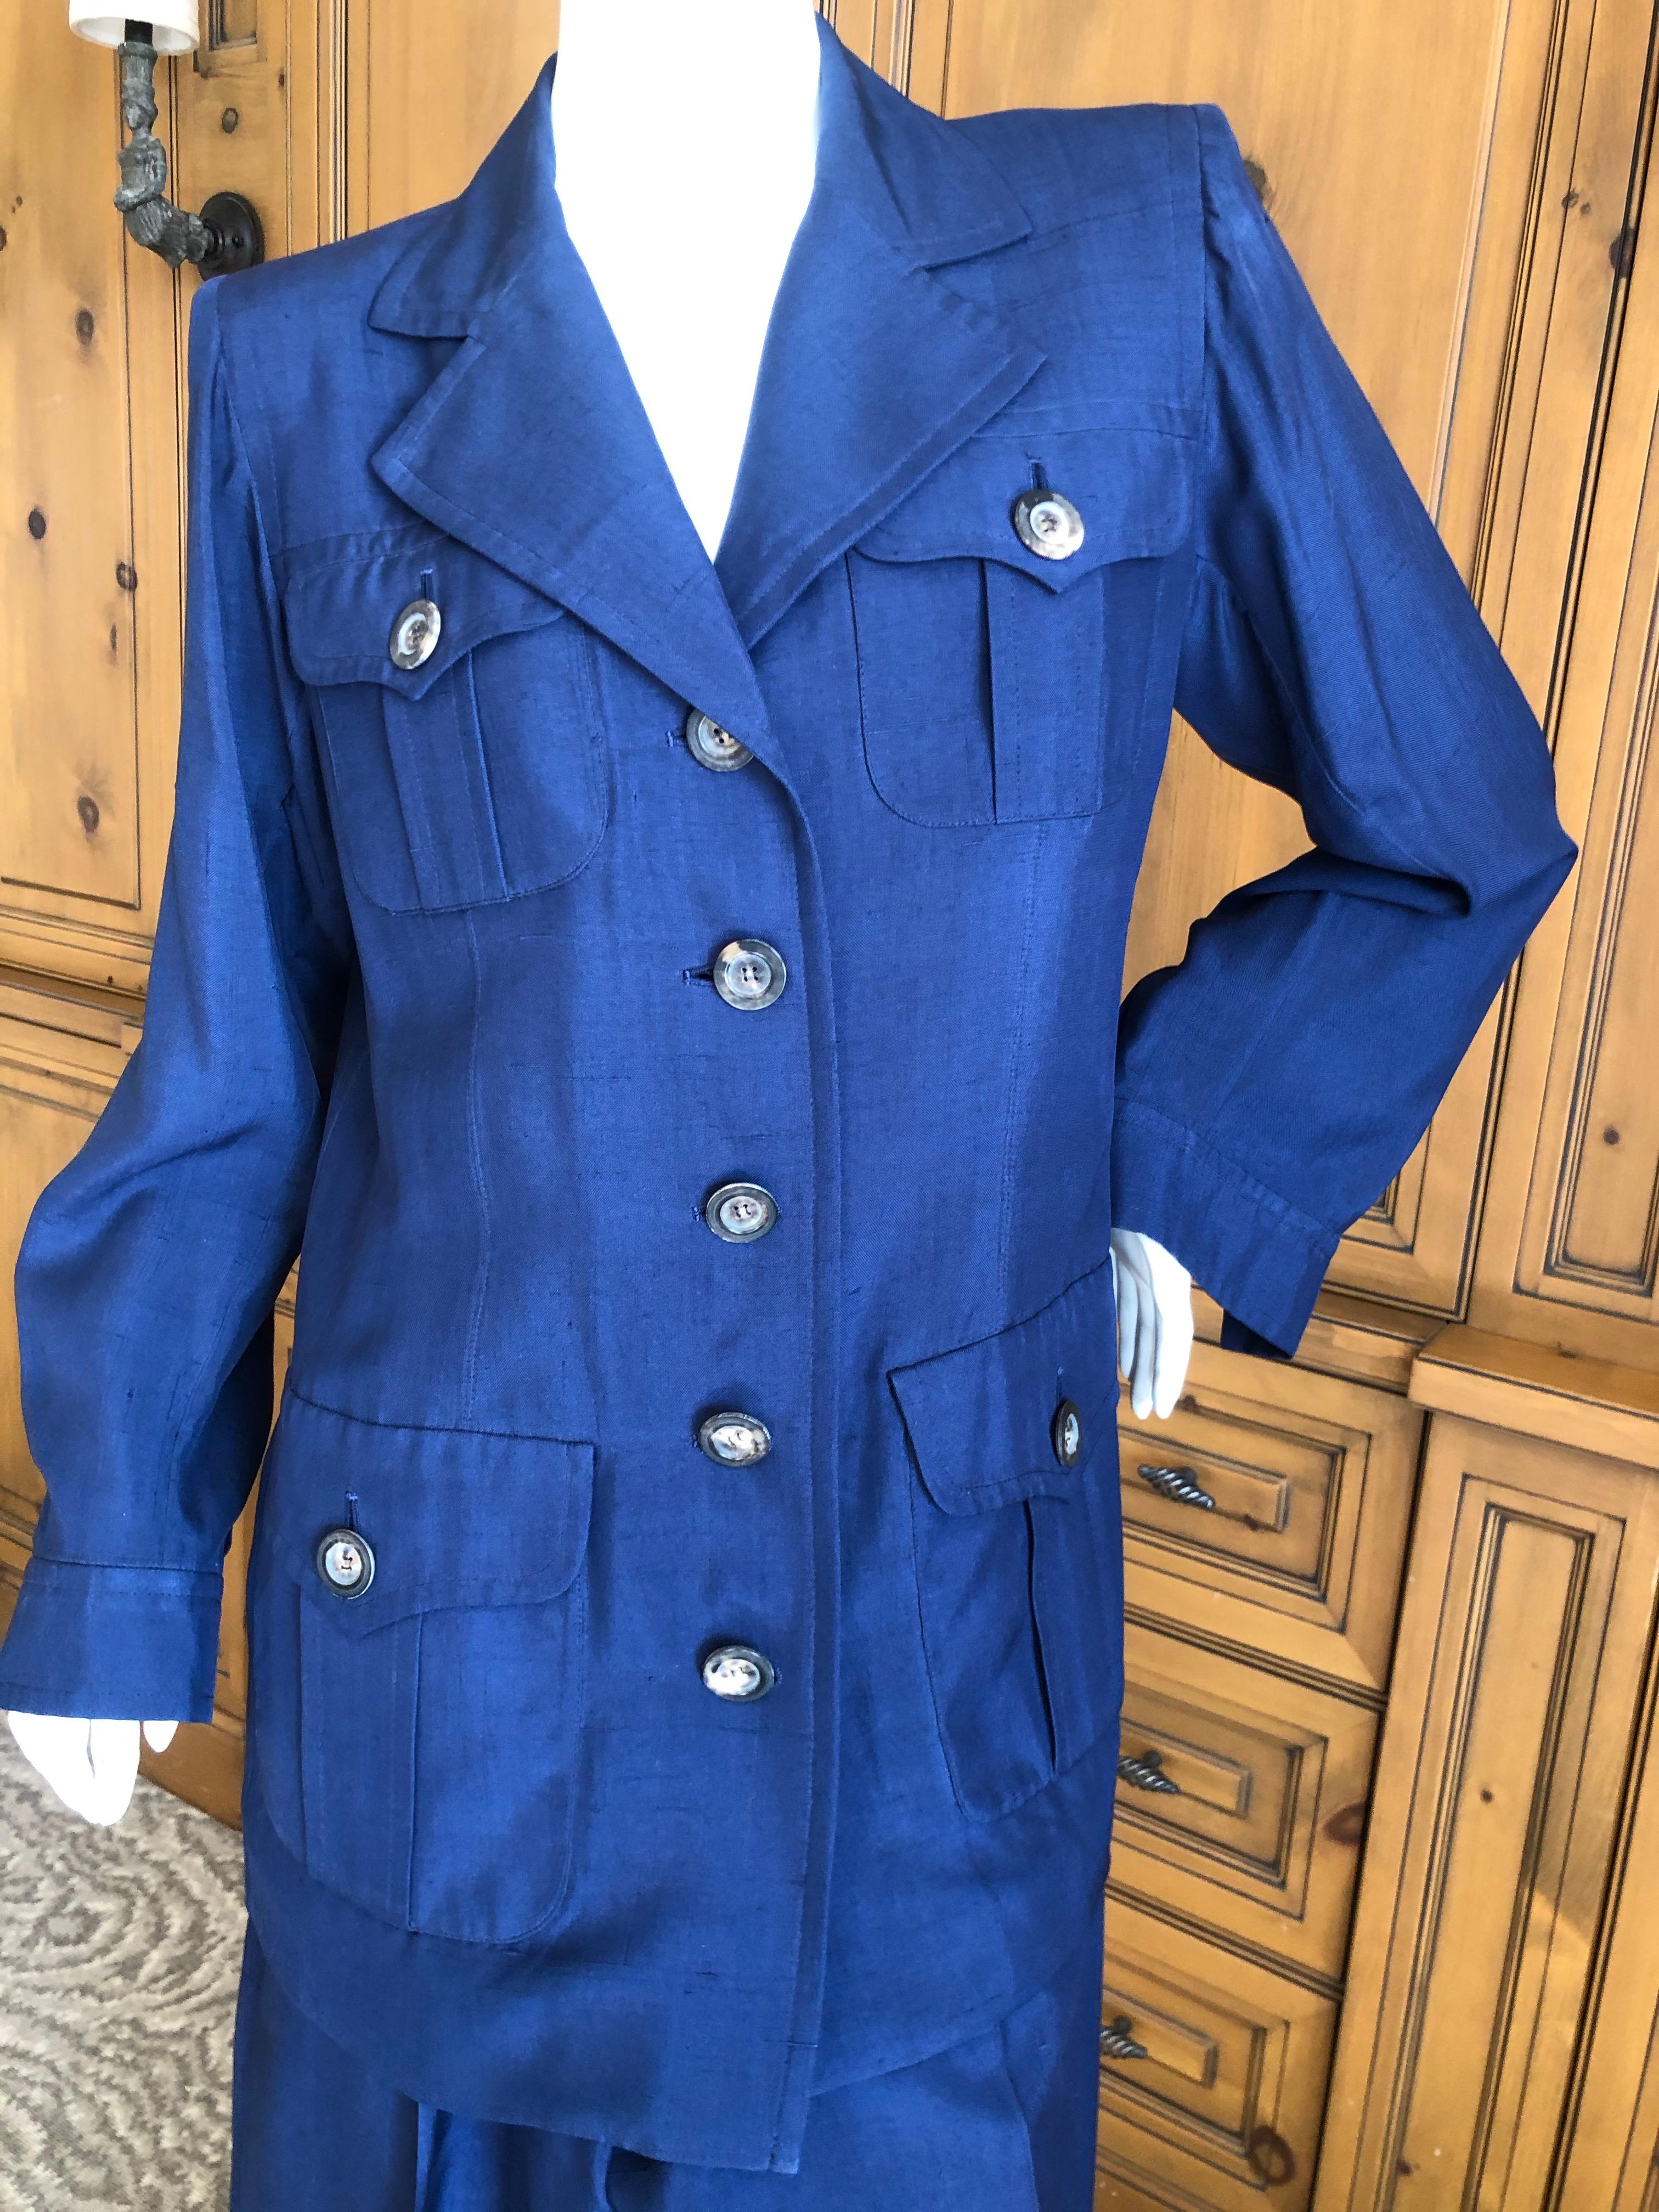 Yves Saint Laurent Vintage 1980's Dupioni Silk Safari Suit with Bold Shoulders
Size 42
Bust 41